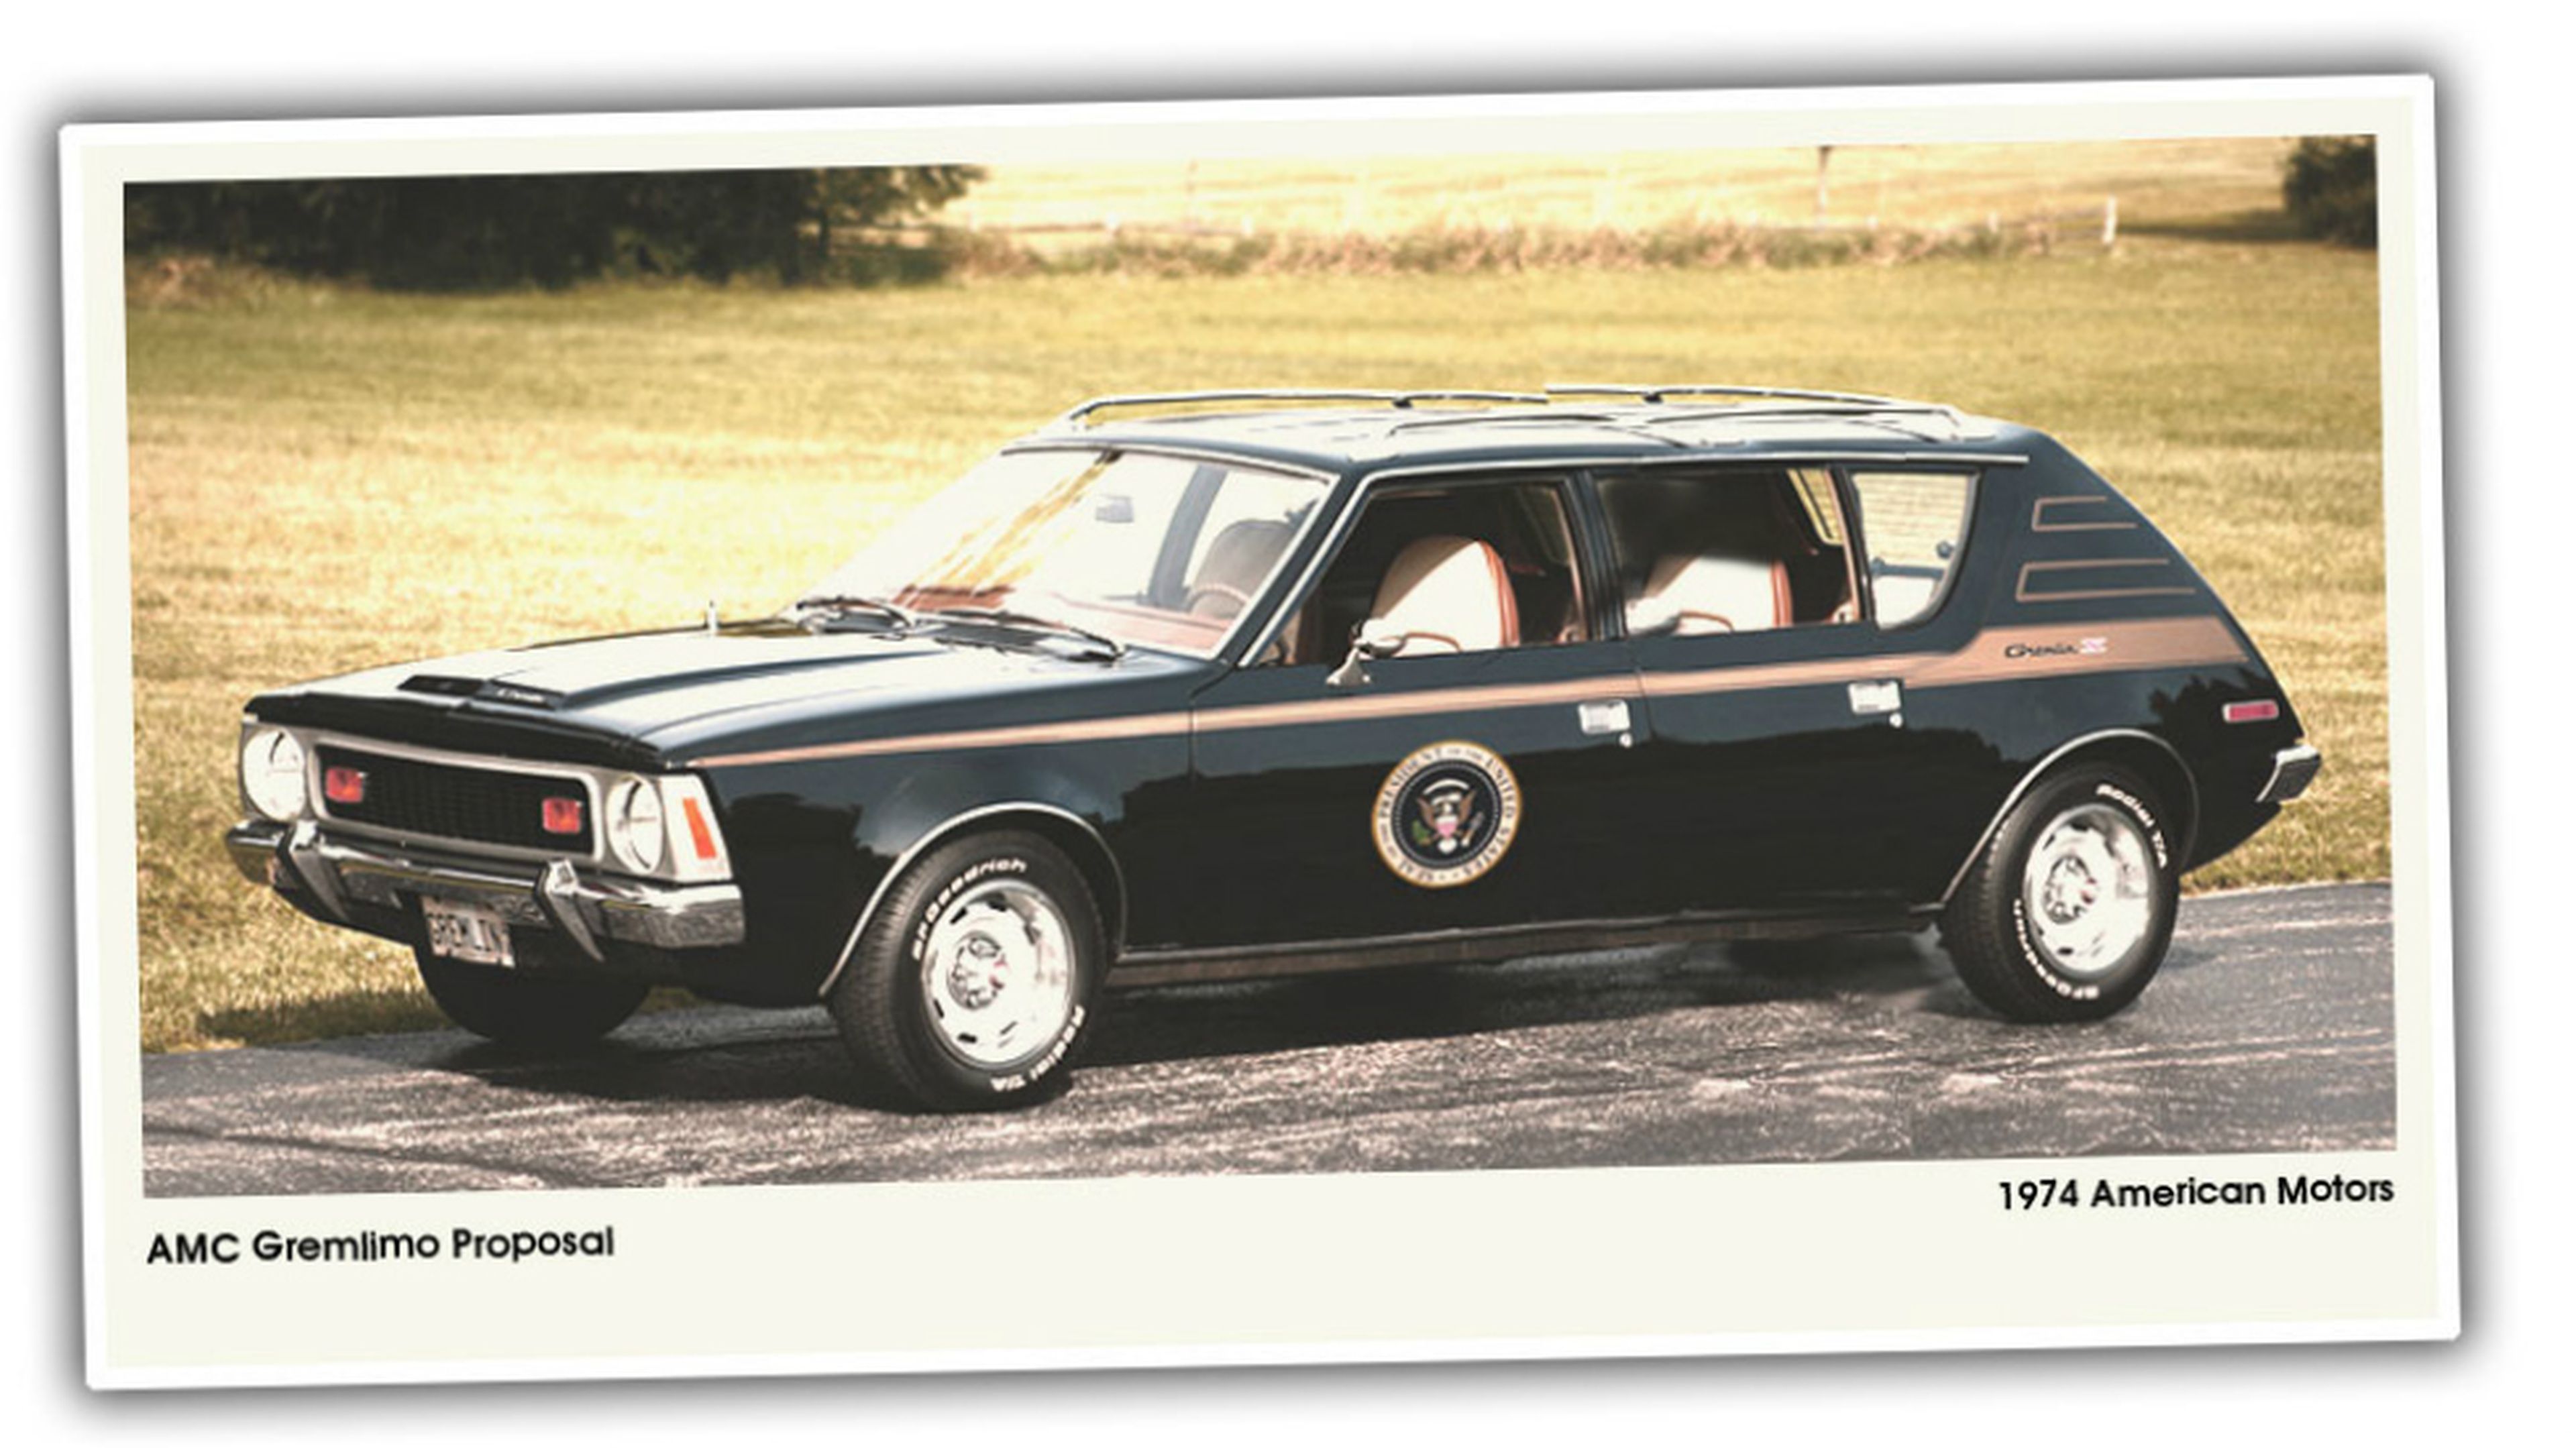 2. AMC Gremlimo (1974) para el presidente Gerald Ford